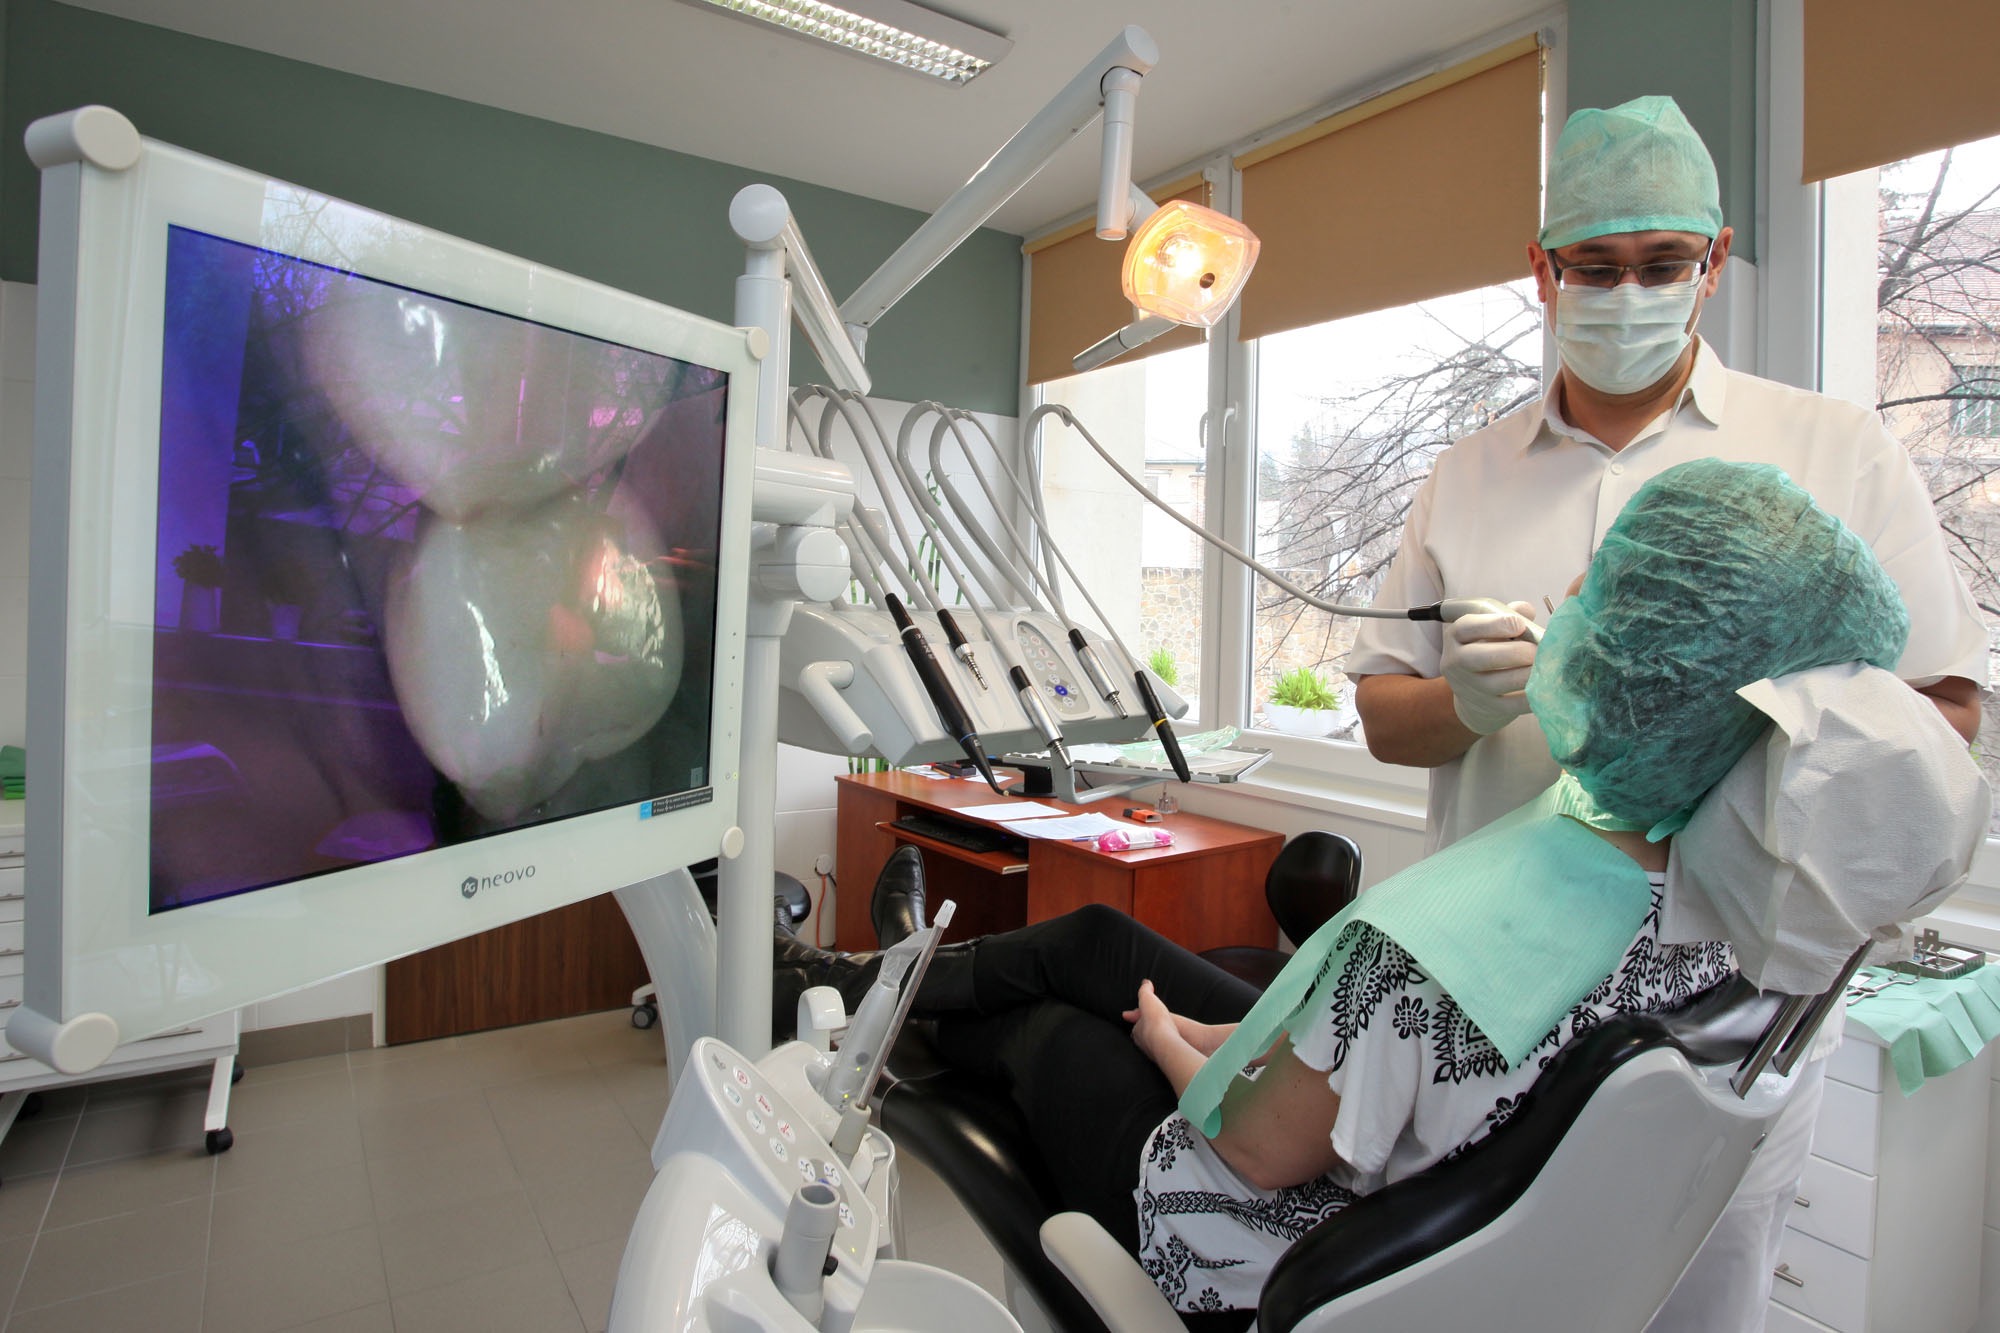 Csontpótló beavatkozások, arcüreg-emelés (sinus lift) a sikeres fogbeültetés érdekében - Kútvölgyi Premium Dental fogászat, Budapest